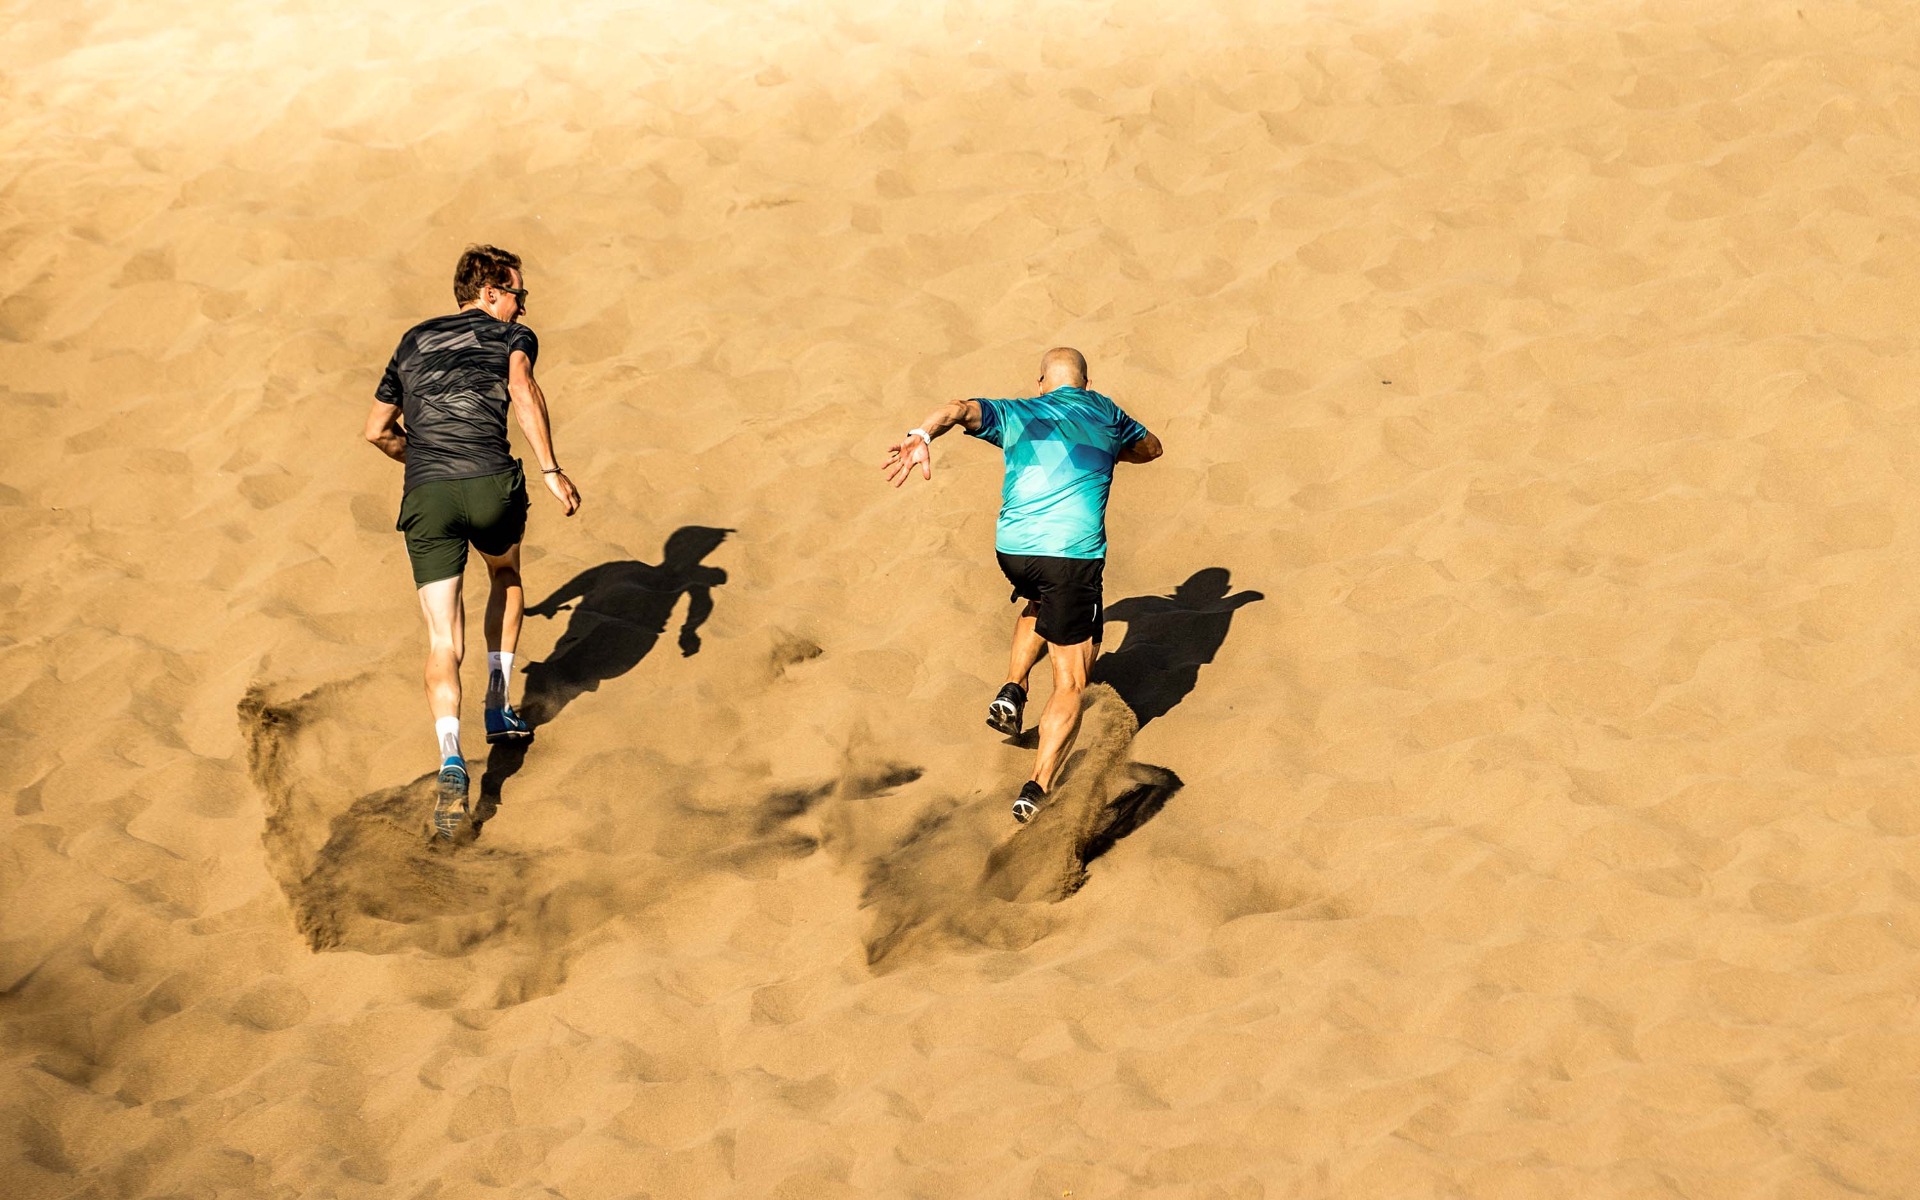 Hardlopers lachen en hebben plezier tijdens het hardlopen op het strand. Rogelli hardloopkleding zorgt voor comfort en flexibiliteit.